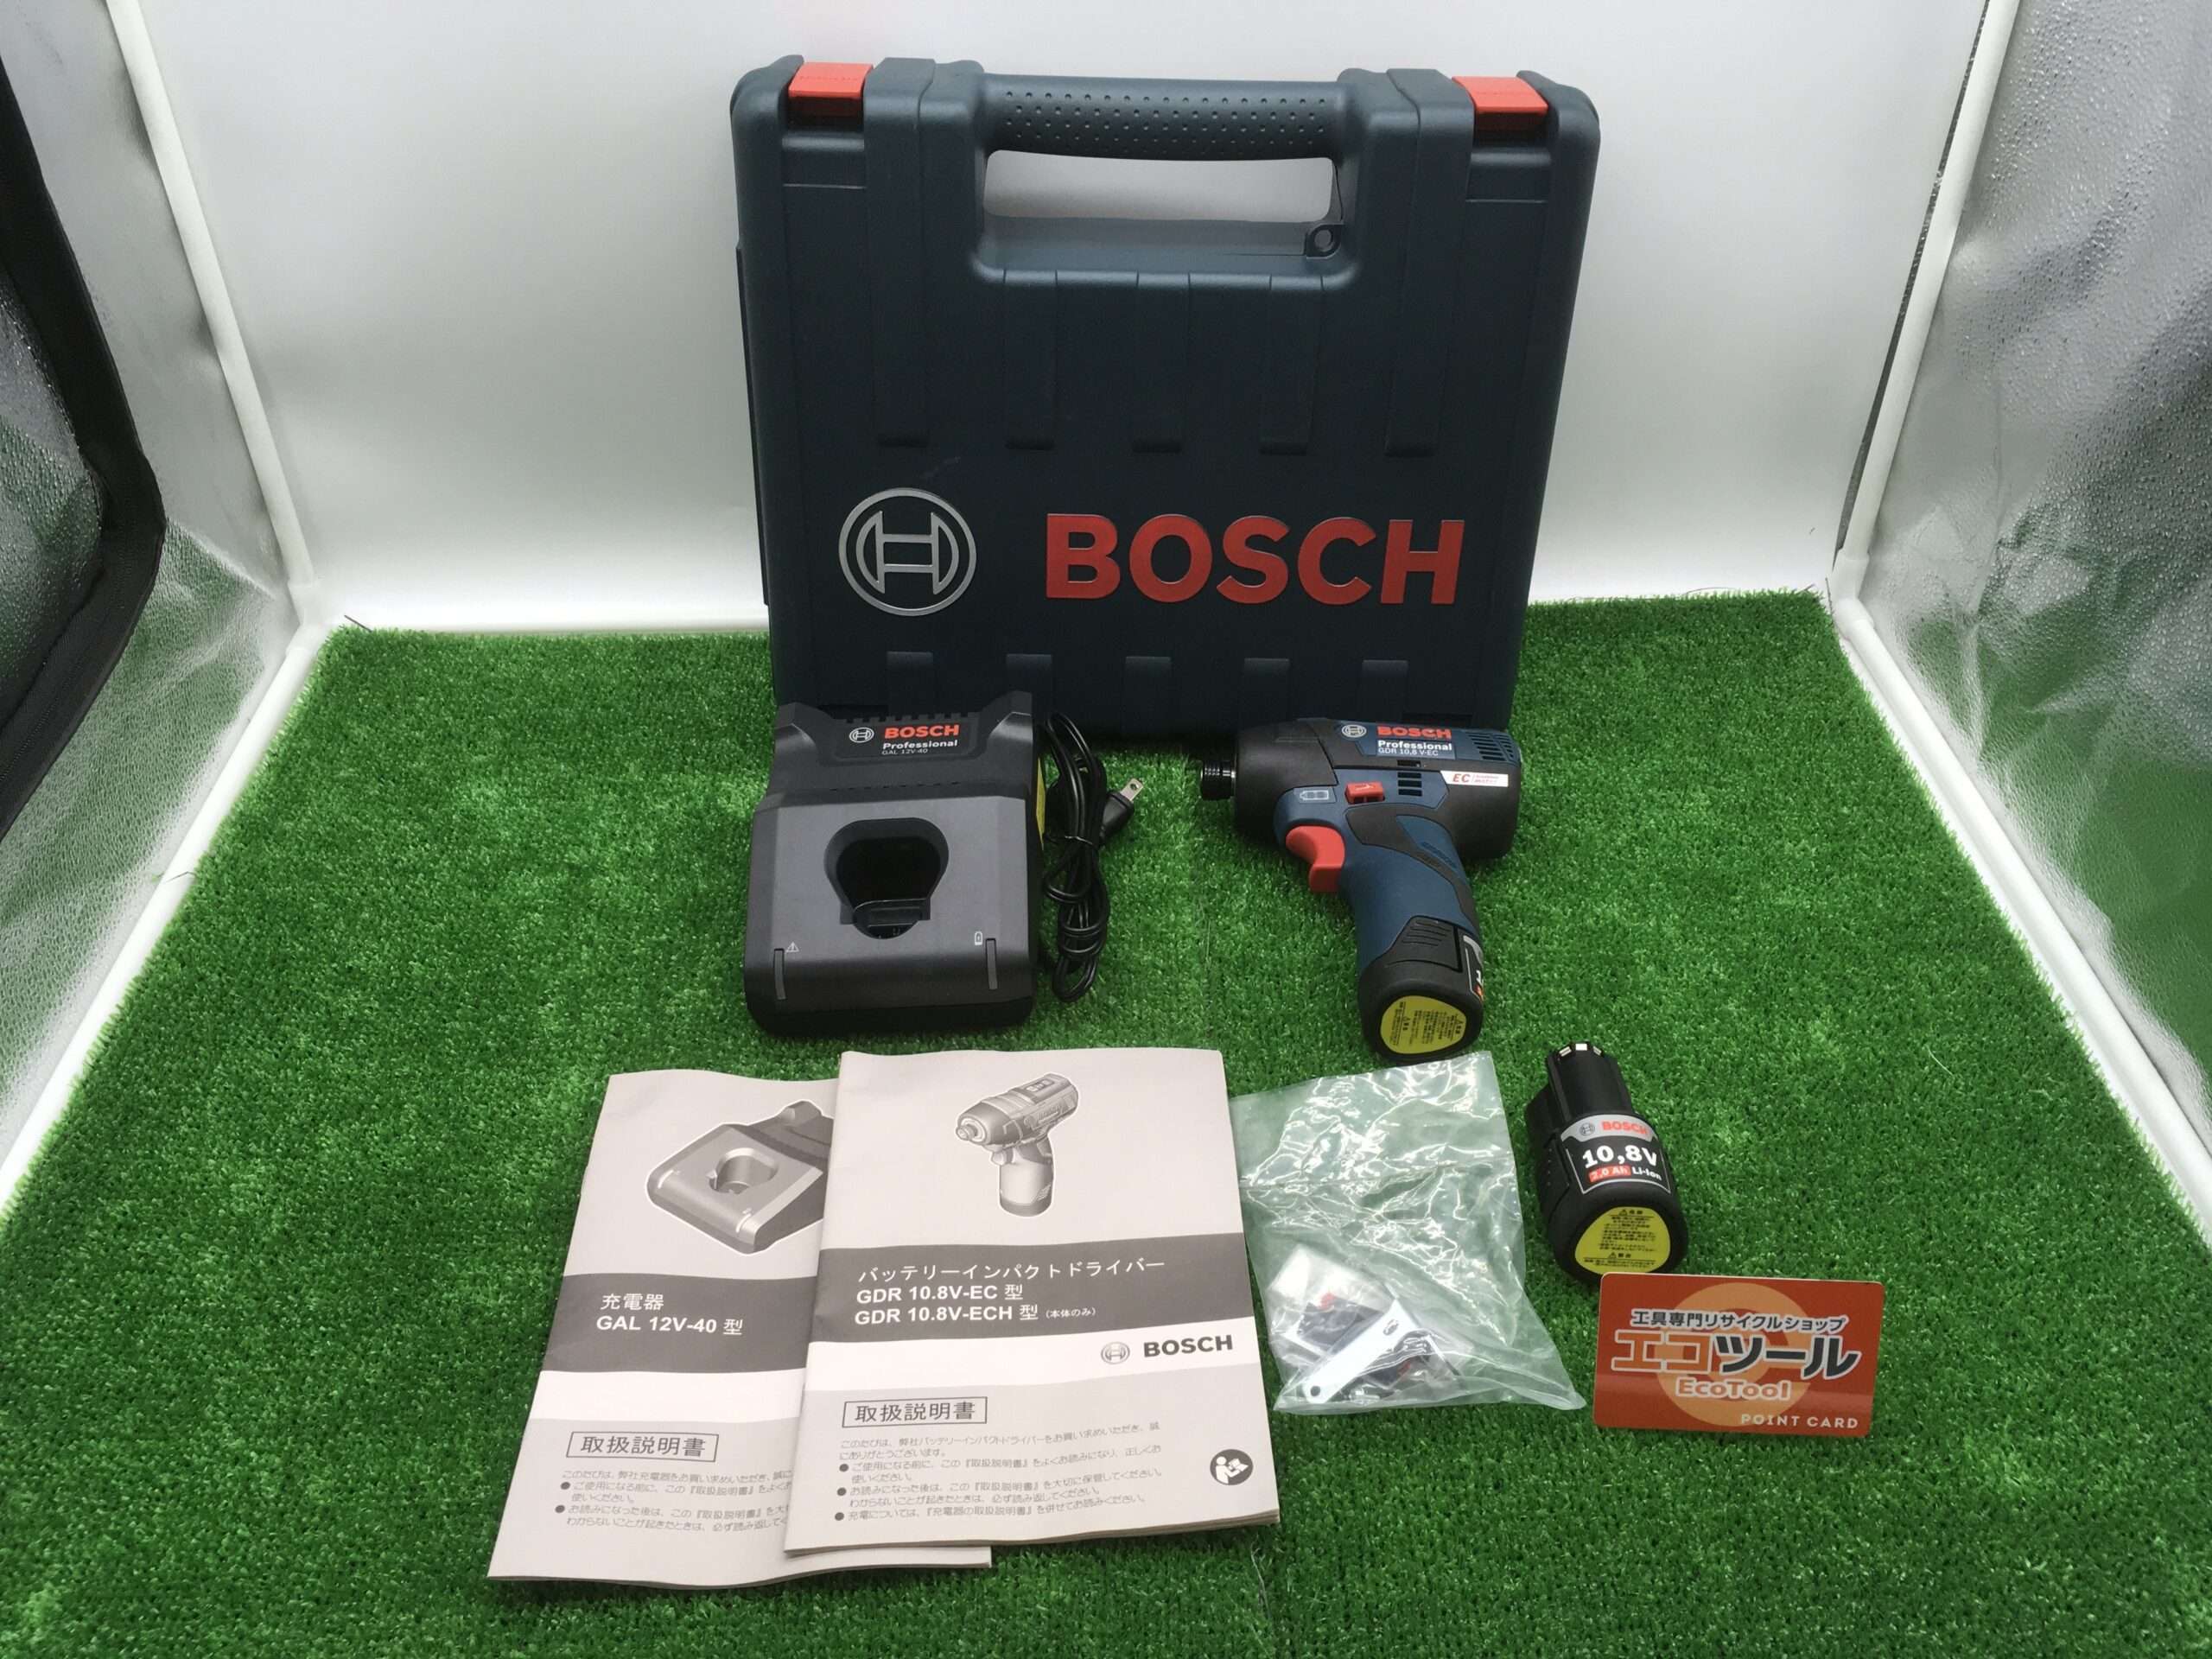 BOSCH(ボッシュ) 10.8Vバッテリーインパクトドライバー GDR10.8V-ECを